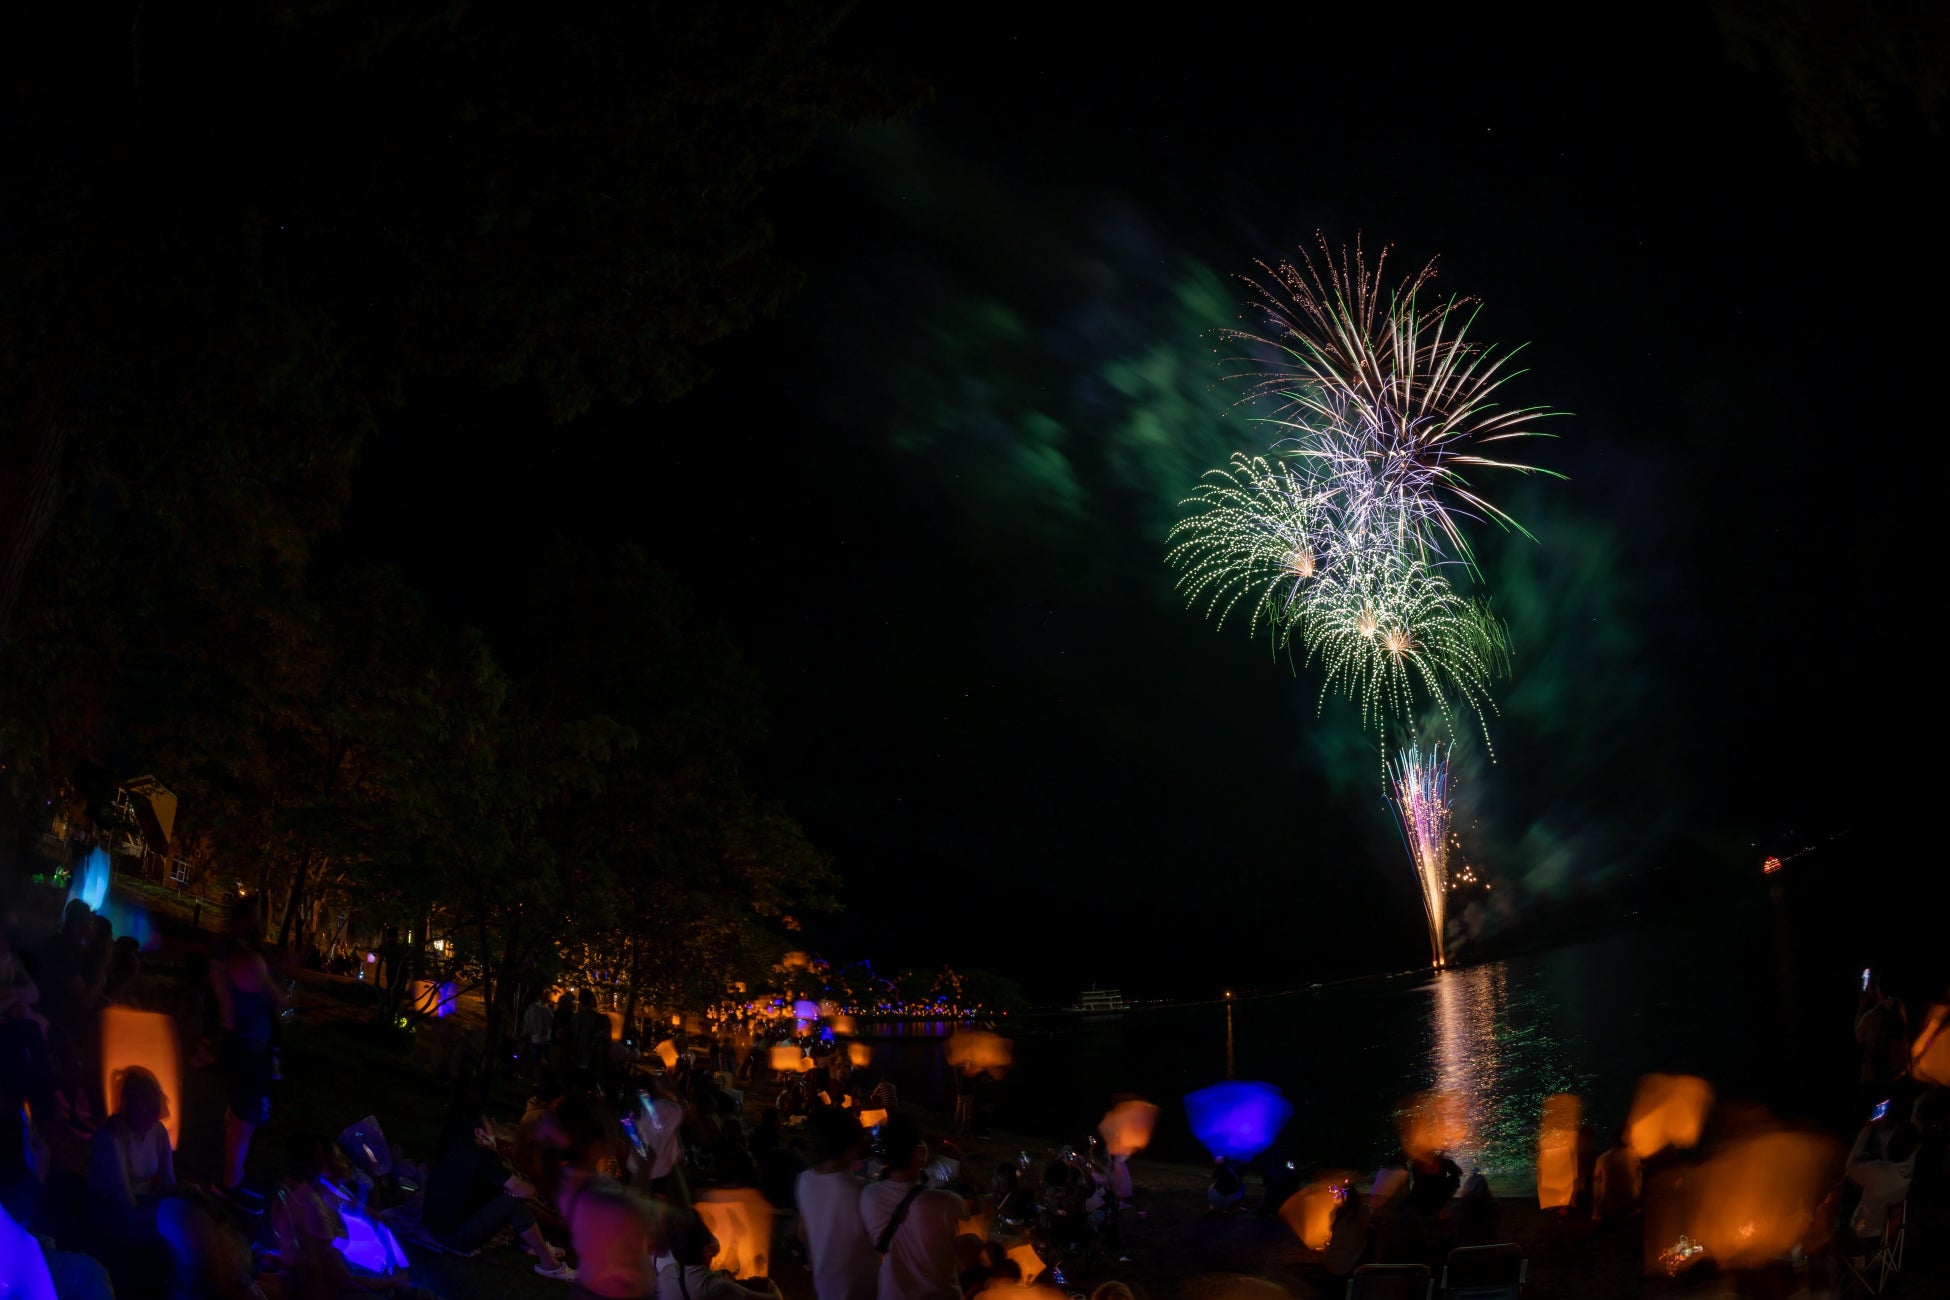 美しい十和田湖畔から、 あなたの想いを込めた「メッセージ花火」を贈りませんか。